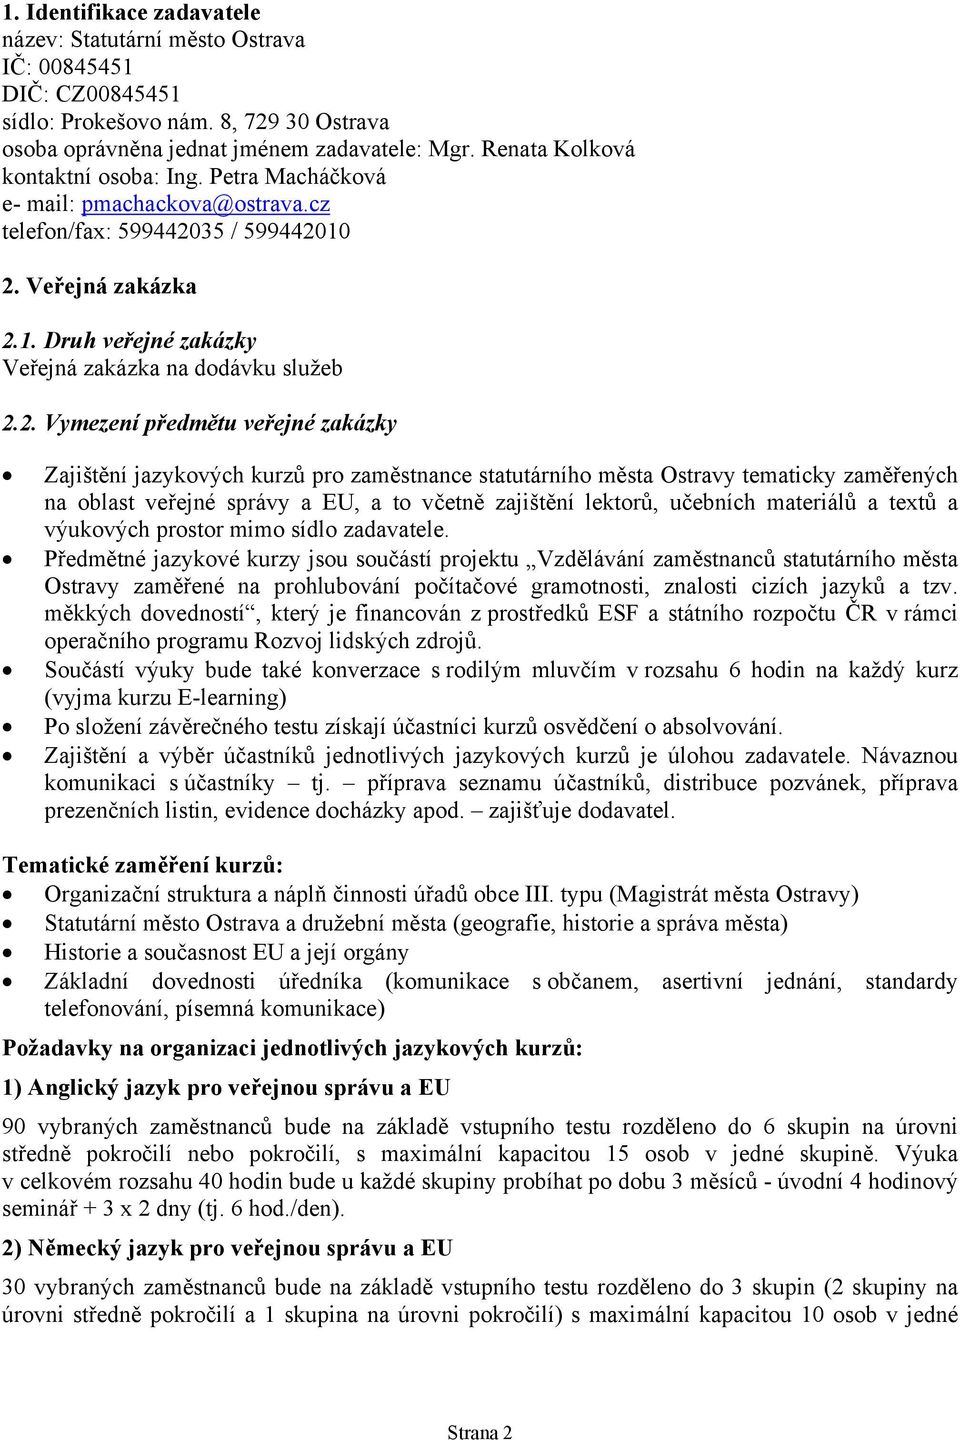 2. Vymezení předmětu veřejné zakázky Zajištění jazykových kurzů pro zaměstnance statutárního města Ostravy tematicky zaměřených na oblast veřejné správy a EU, a to včetně zajištění lektorů, učebních